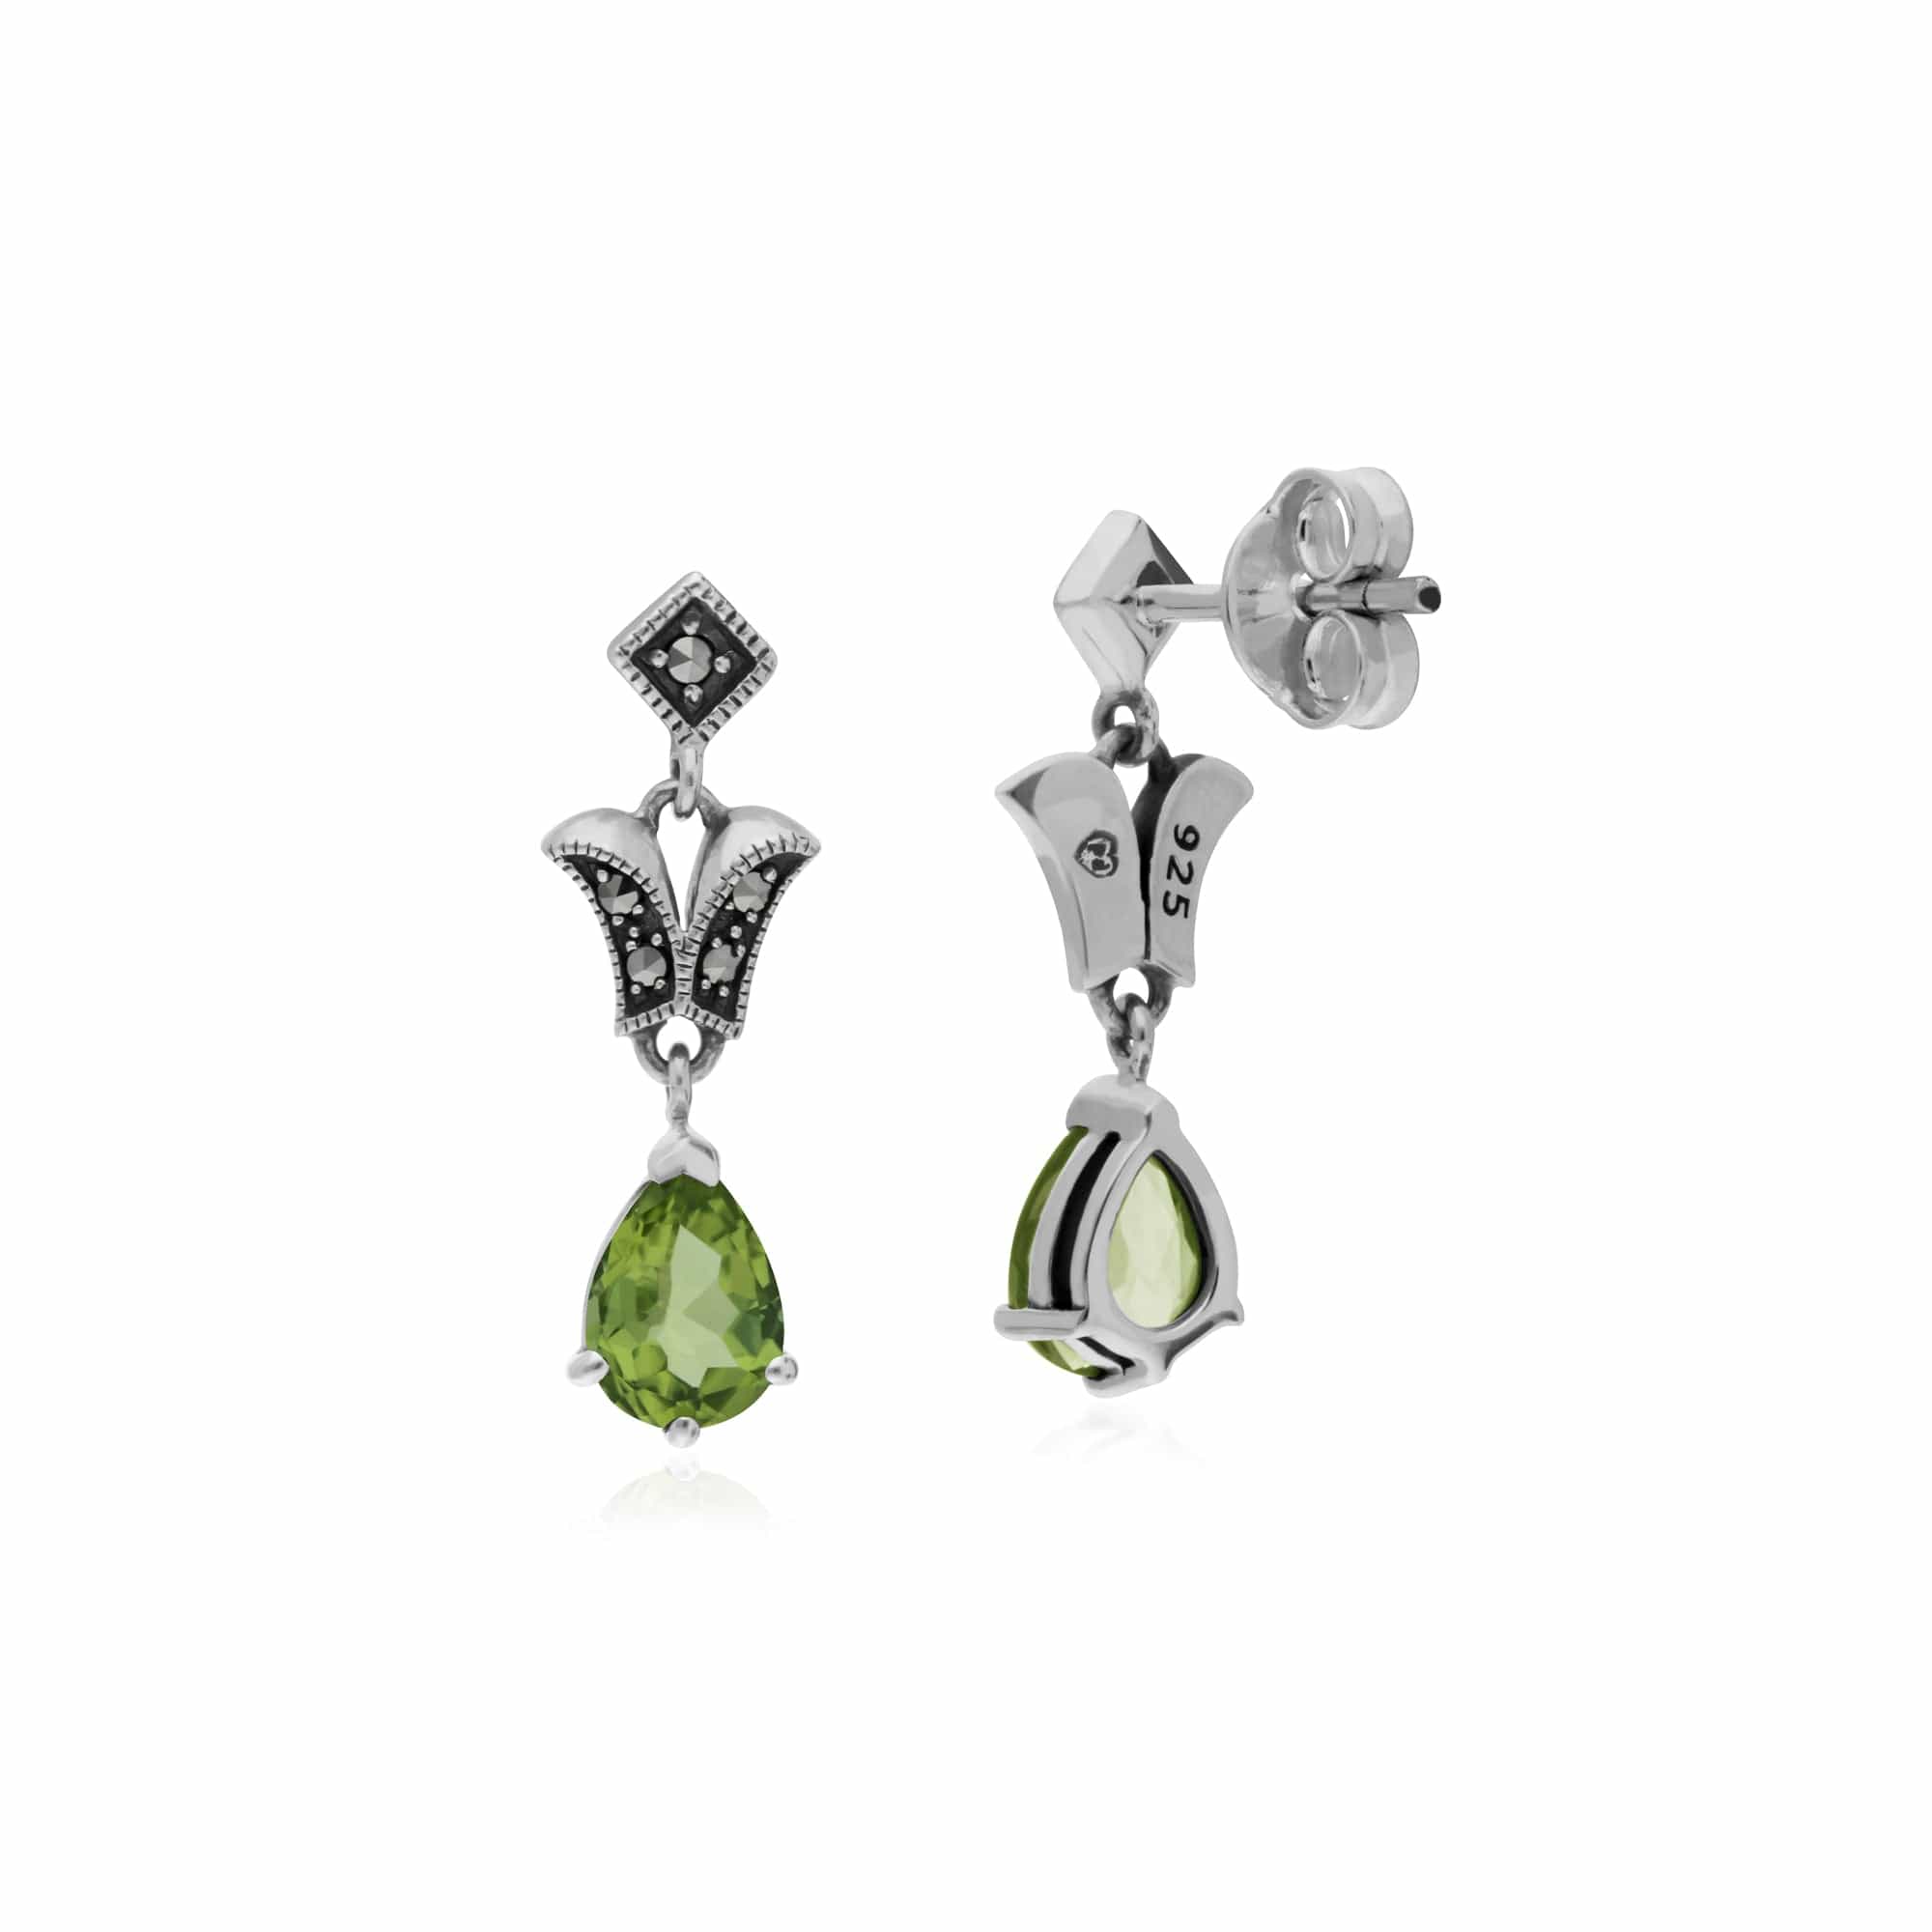 214E859603925 Art Nouveau Style Pear Peridot & Marcasite Drop Earrings in 925 Sterling Silver 2